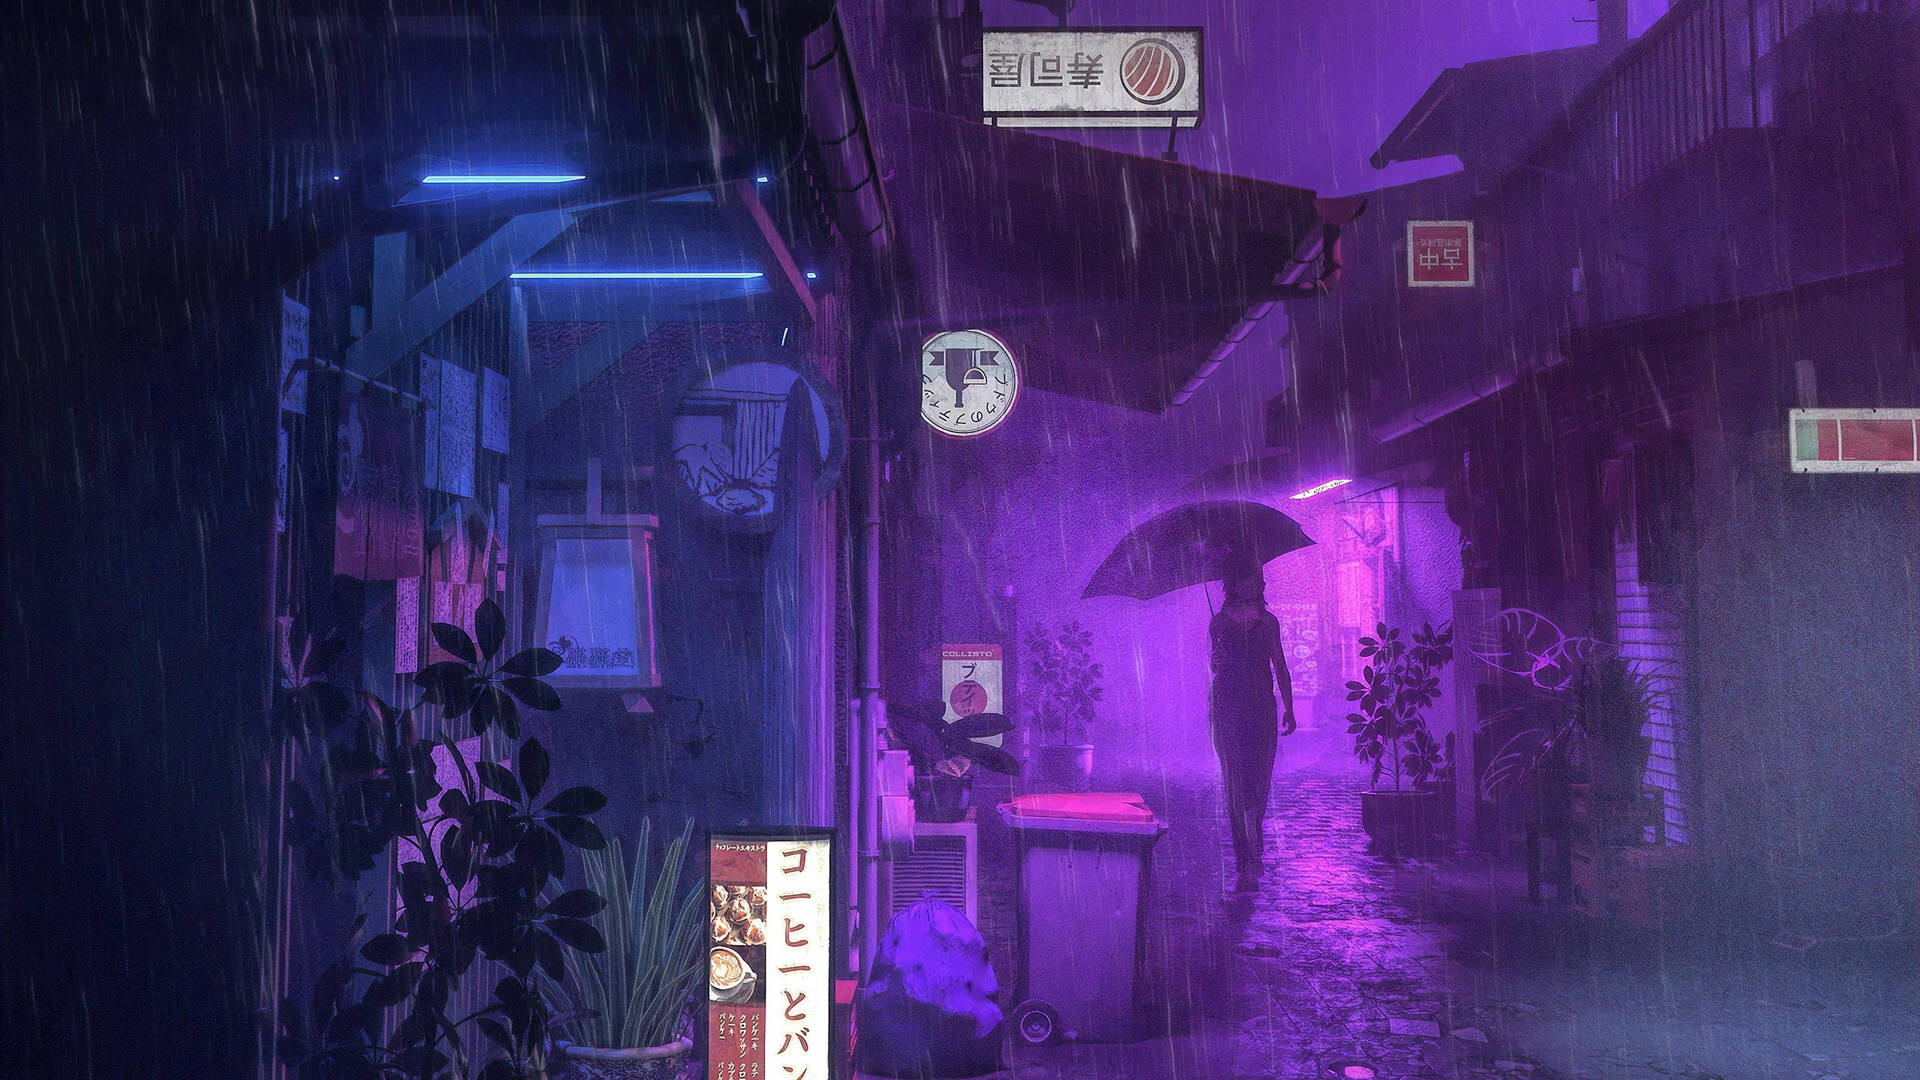 Restaurants Under Rain Aesthetic Purple Neon Computer Wallpaper